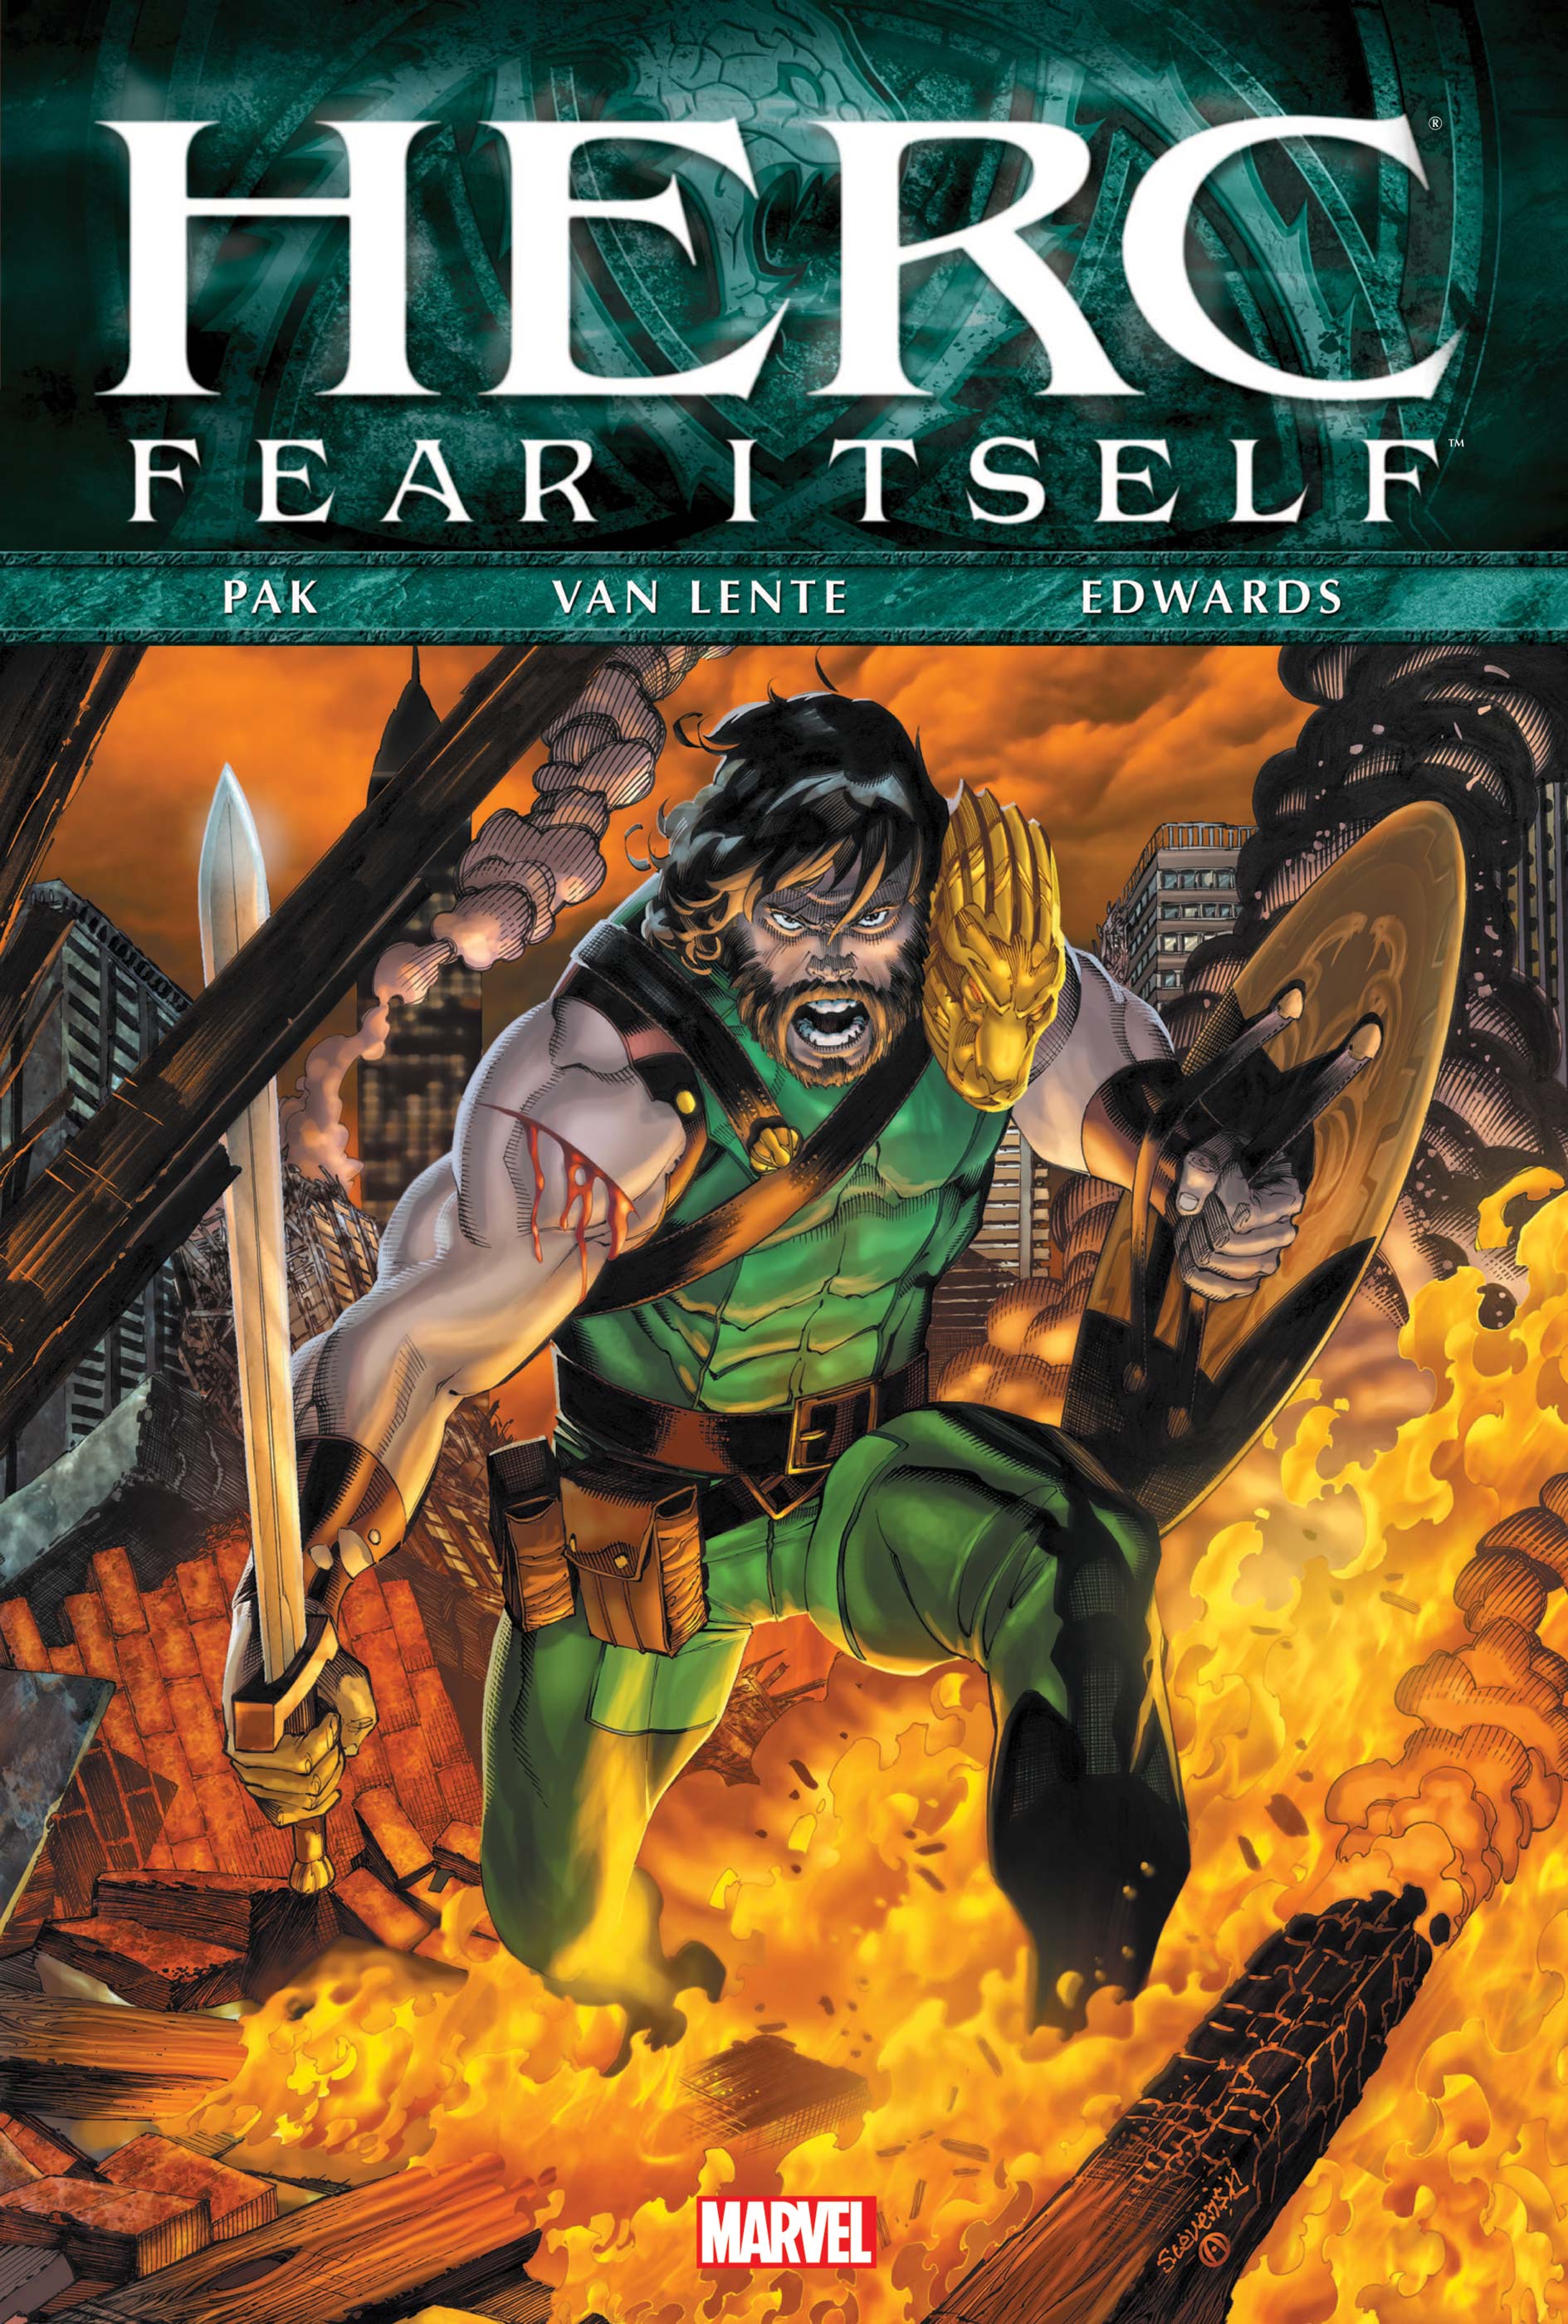 FEAR ITSELF: HERC PREMIERE HC (Hardcover)